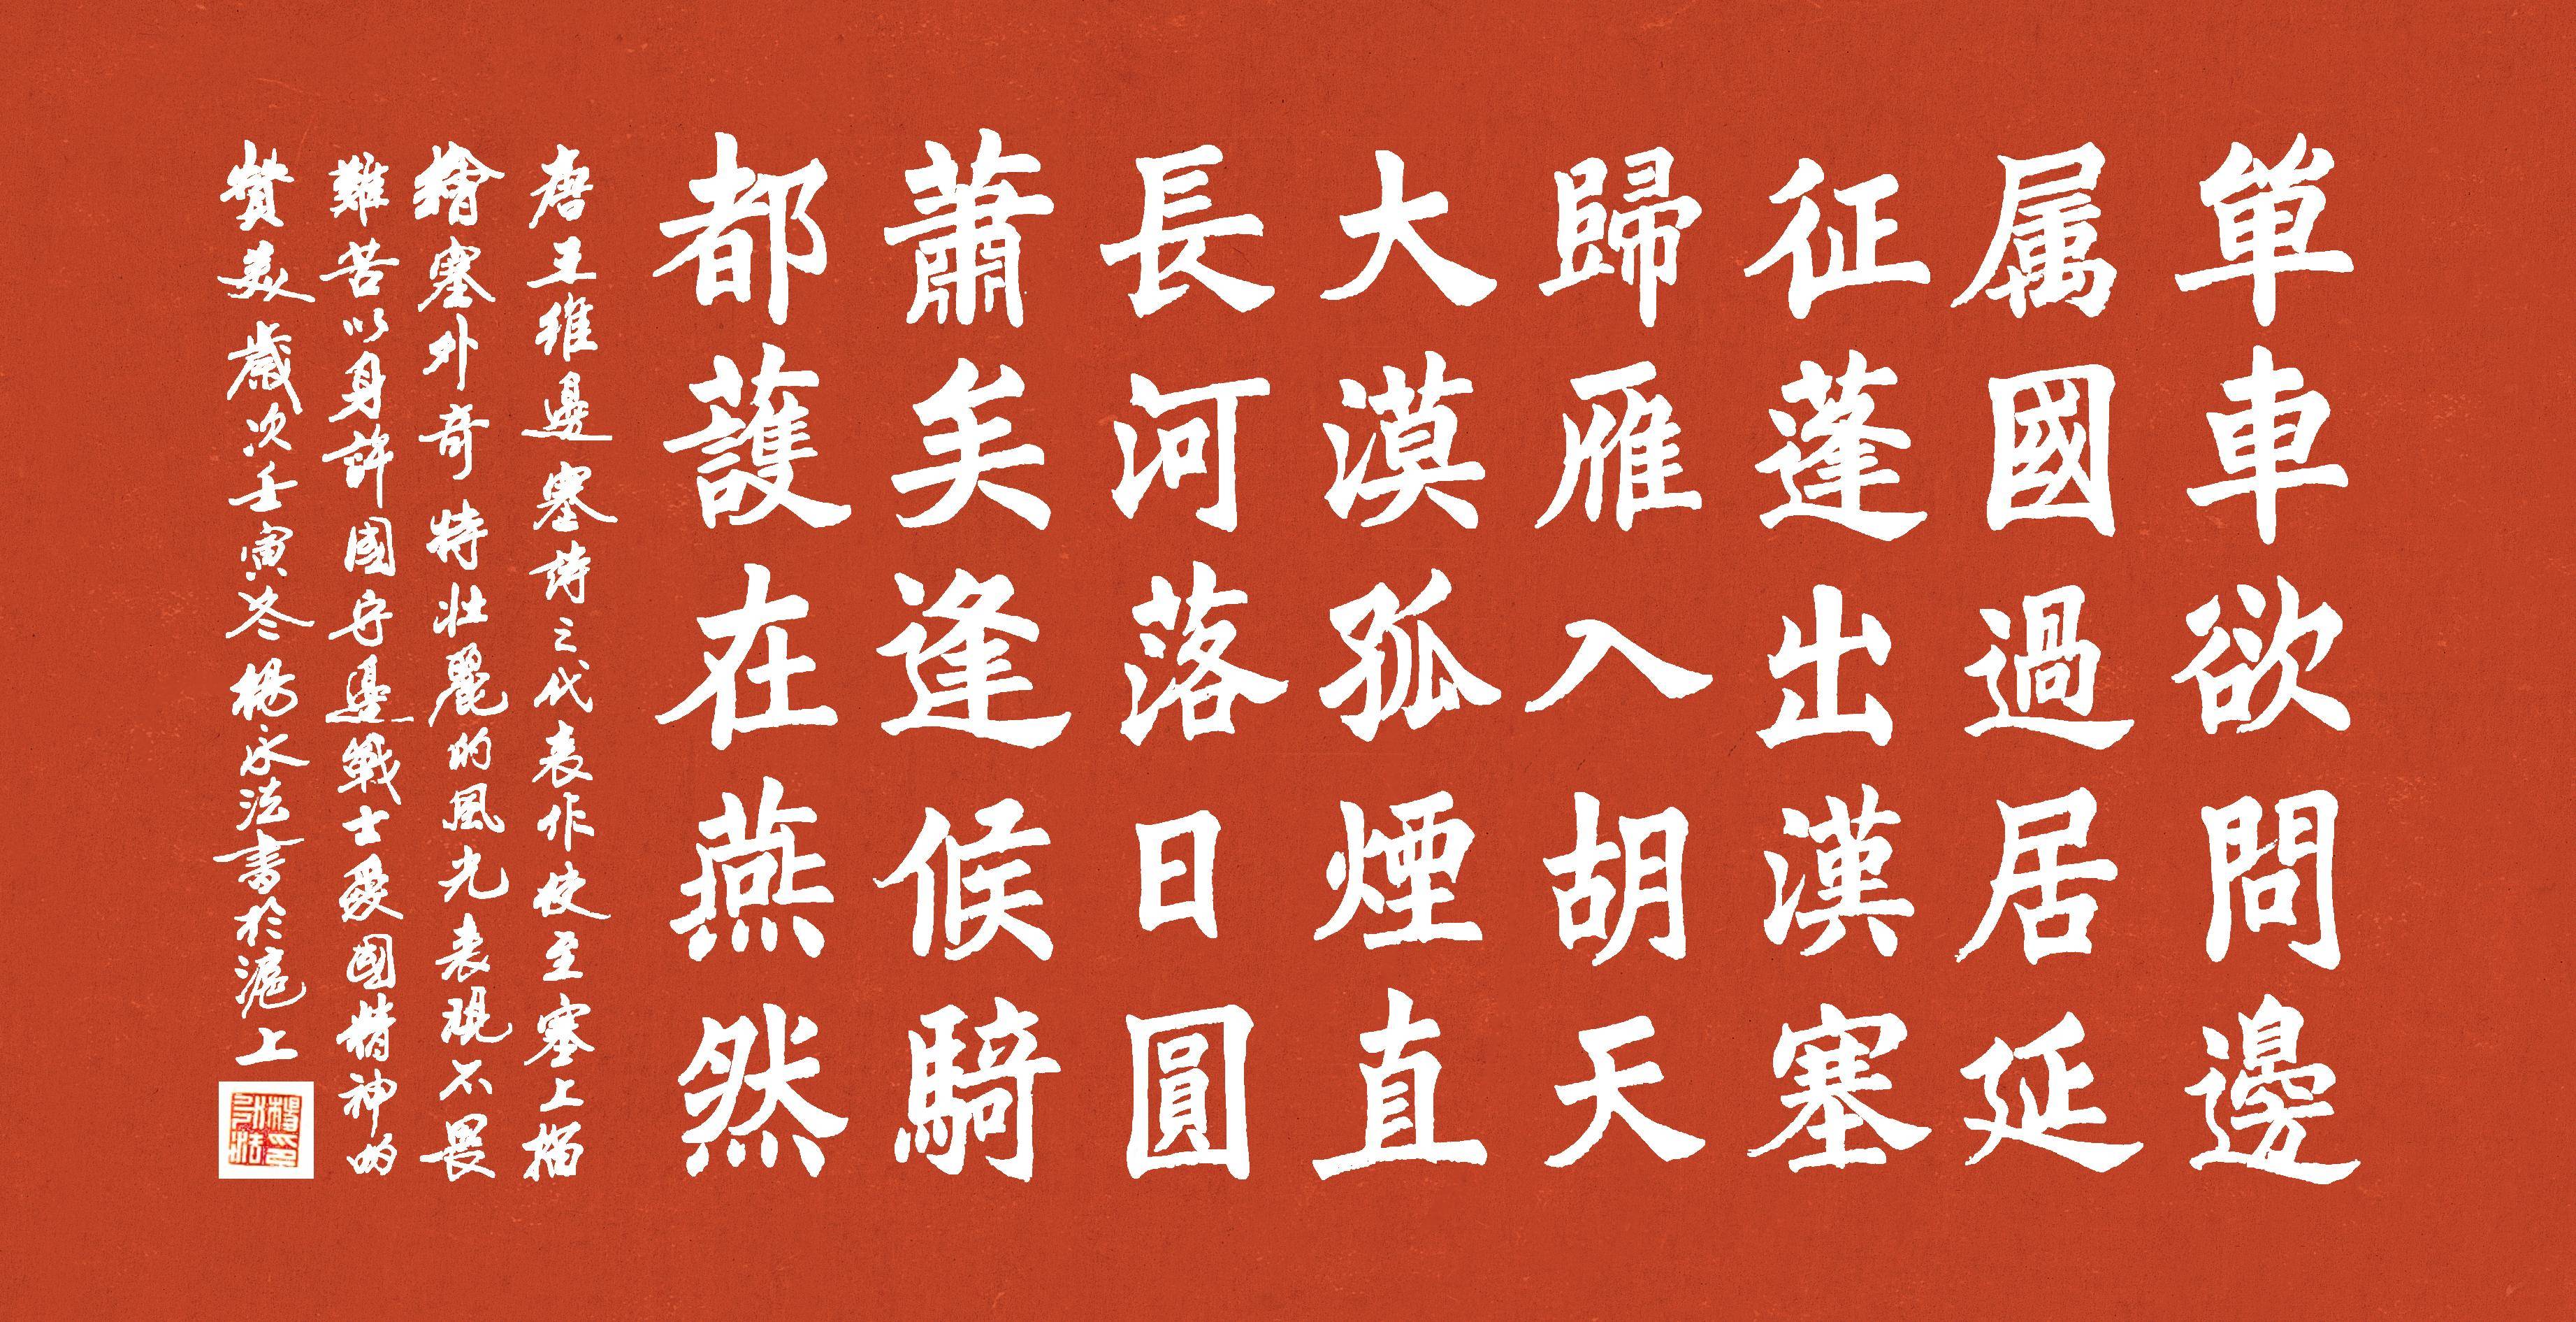 杨永法:传递文化力量 推动书法走向人民大众